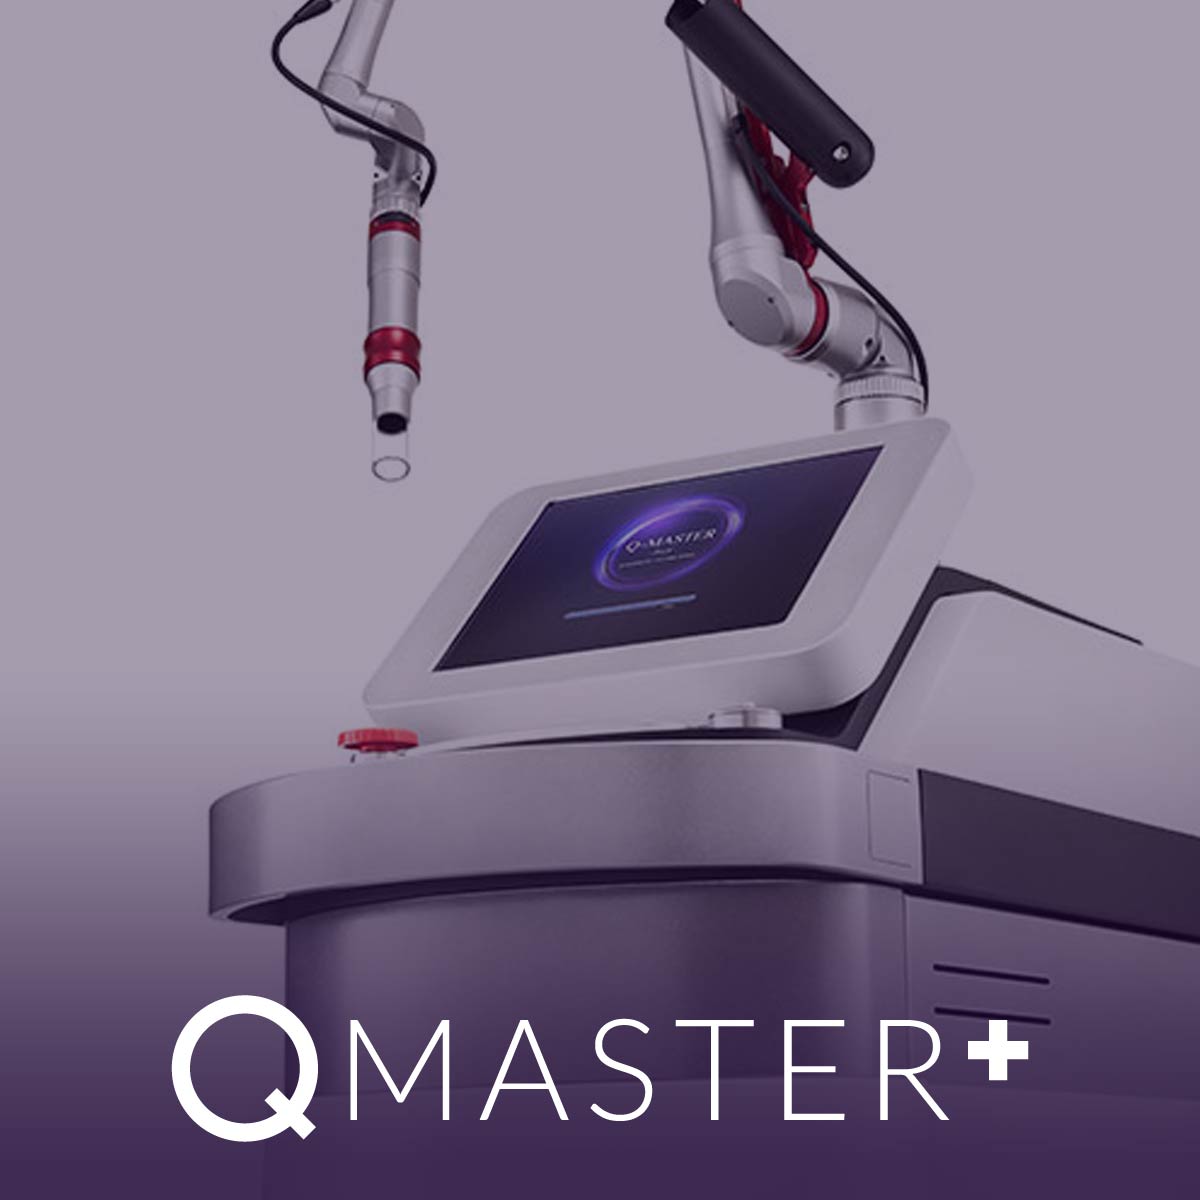 Q-Master